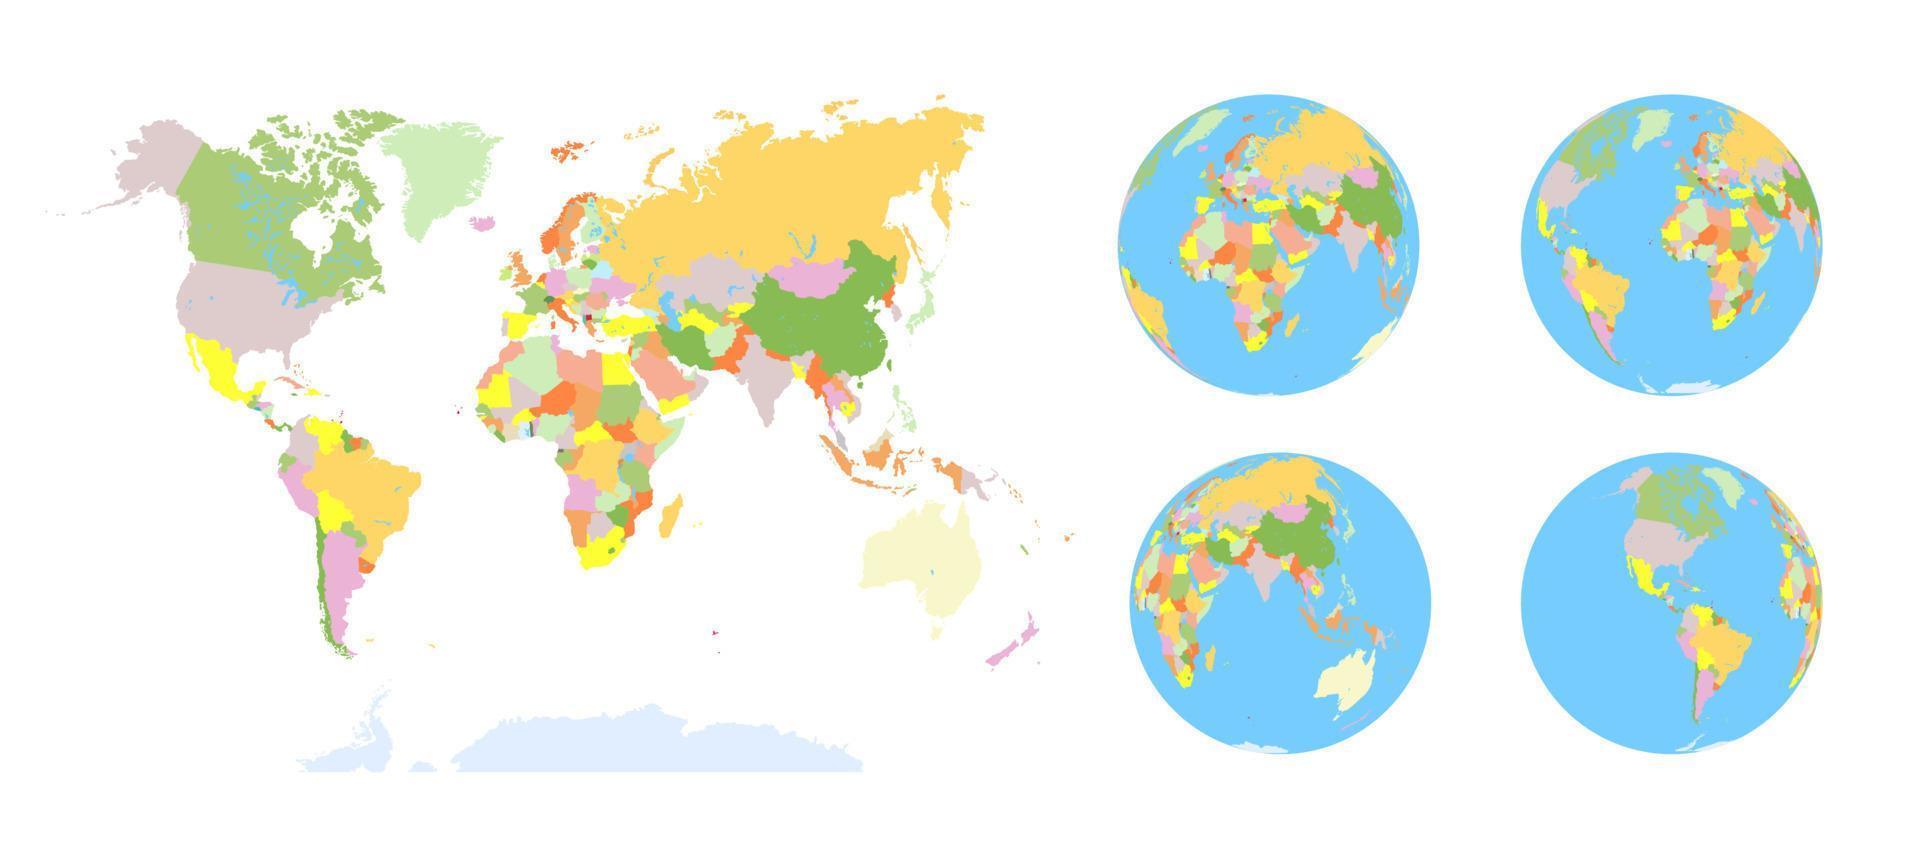 Erdkugel. Weltkarten-Set. Planet mit continents.africa Asien, Australien, Europa, Nordamerika und Südamerika vektor